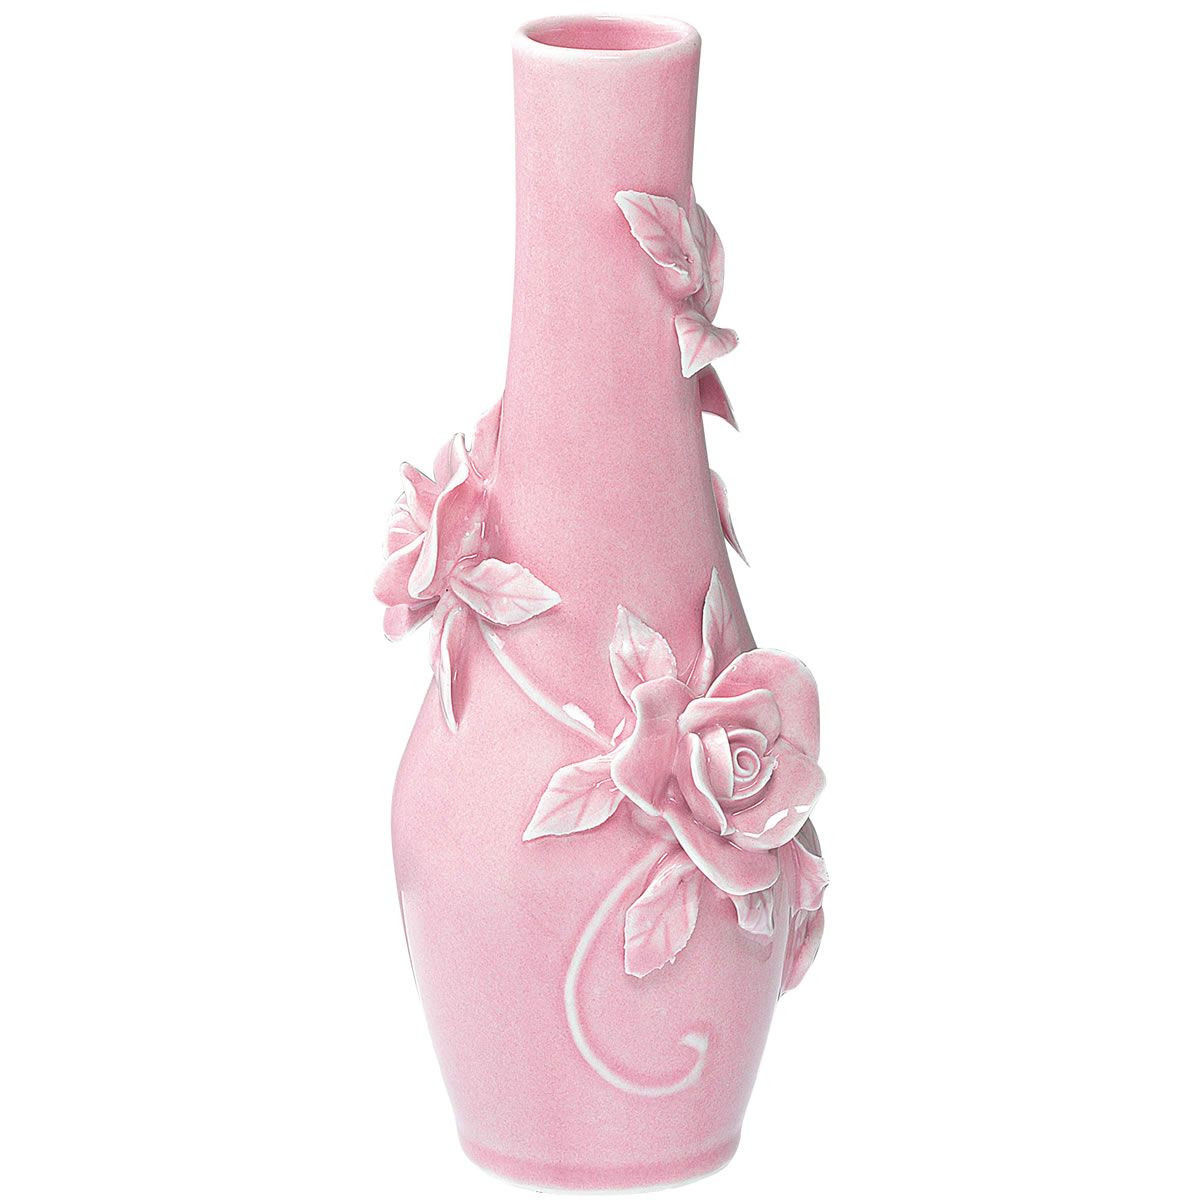 pink bud vase of rambling rose bud vase pink from domayne pink pink pink with rambling rose bud vase pink from domayne